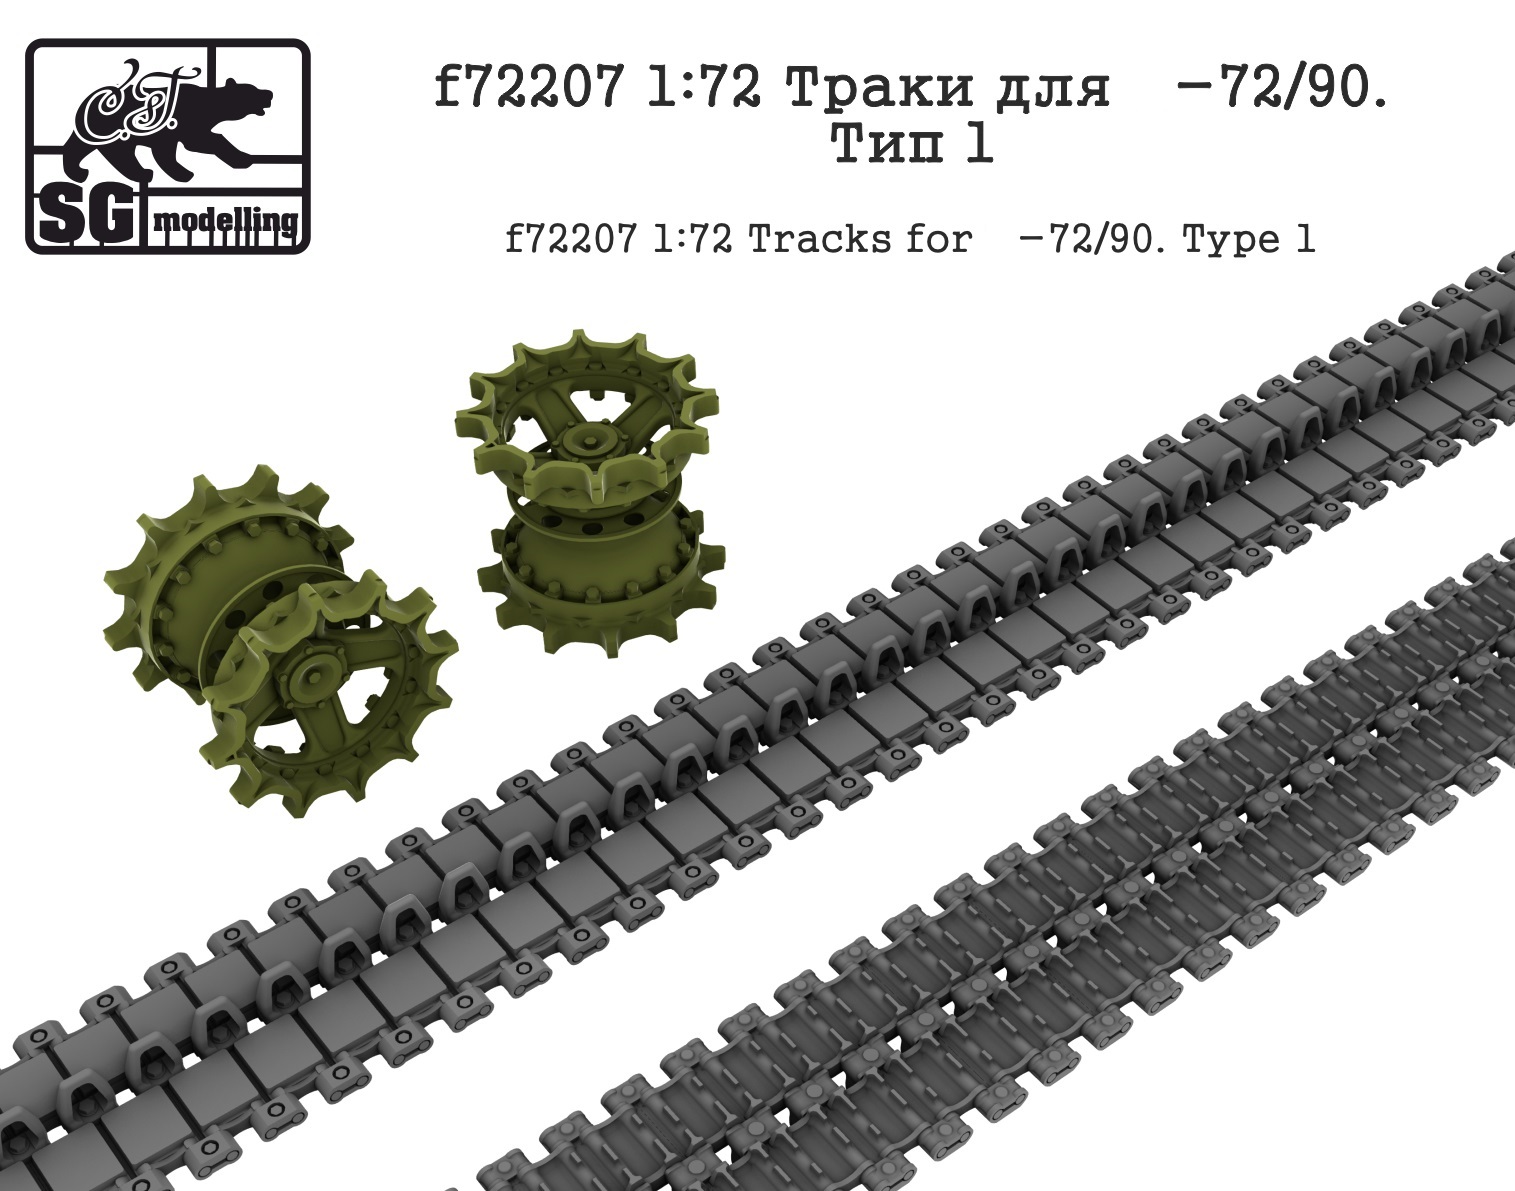 f72207  дополнения из смолы  Траки для Танк-72/90. Тип 1  (1:72)